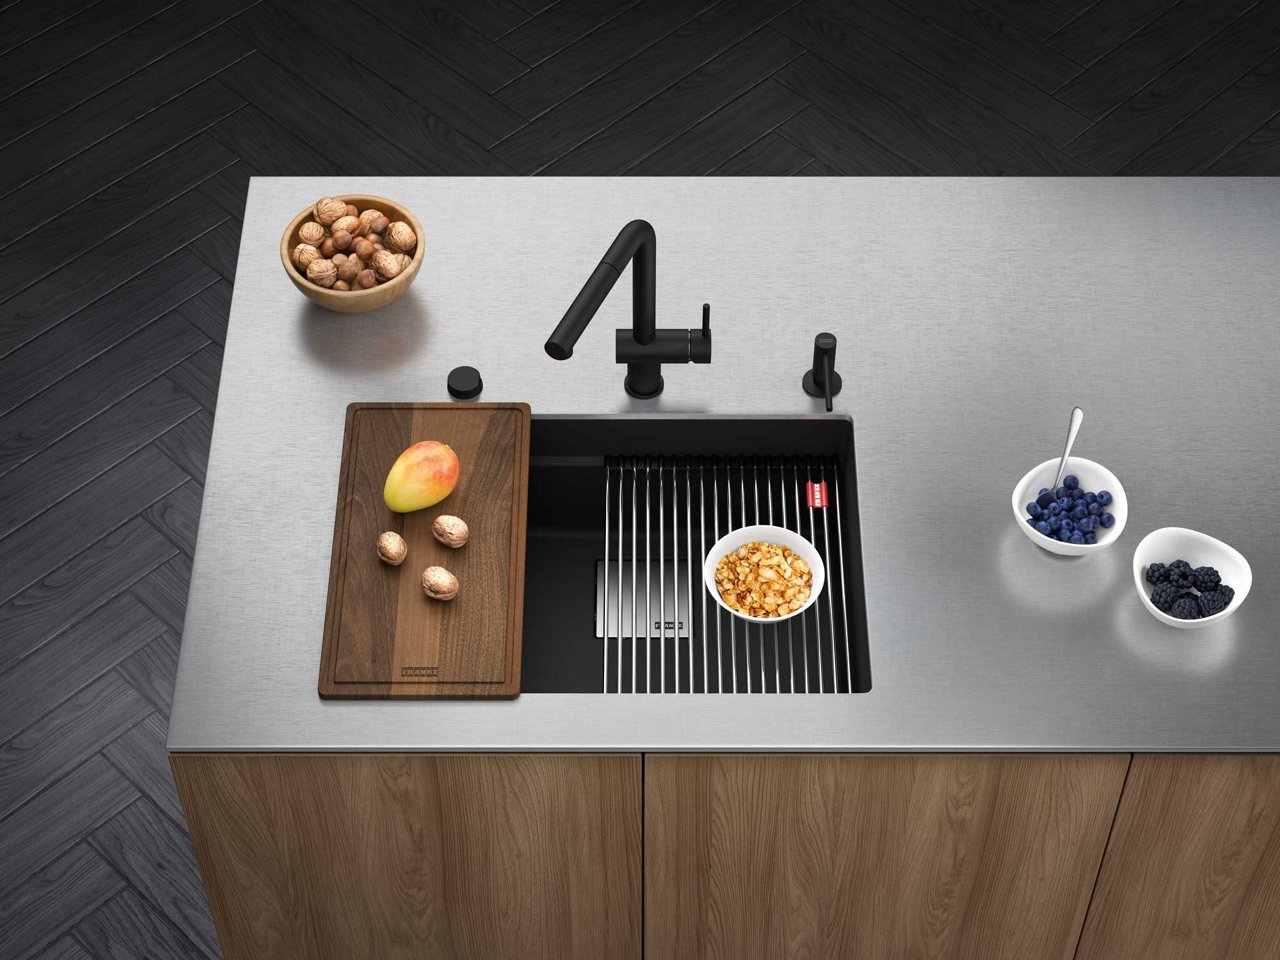 Peak matte black workcenter granite kitchen sink in a kitchen island with a stainless steel countertop 